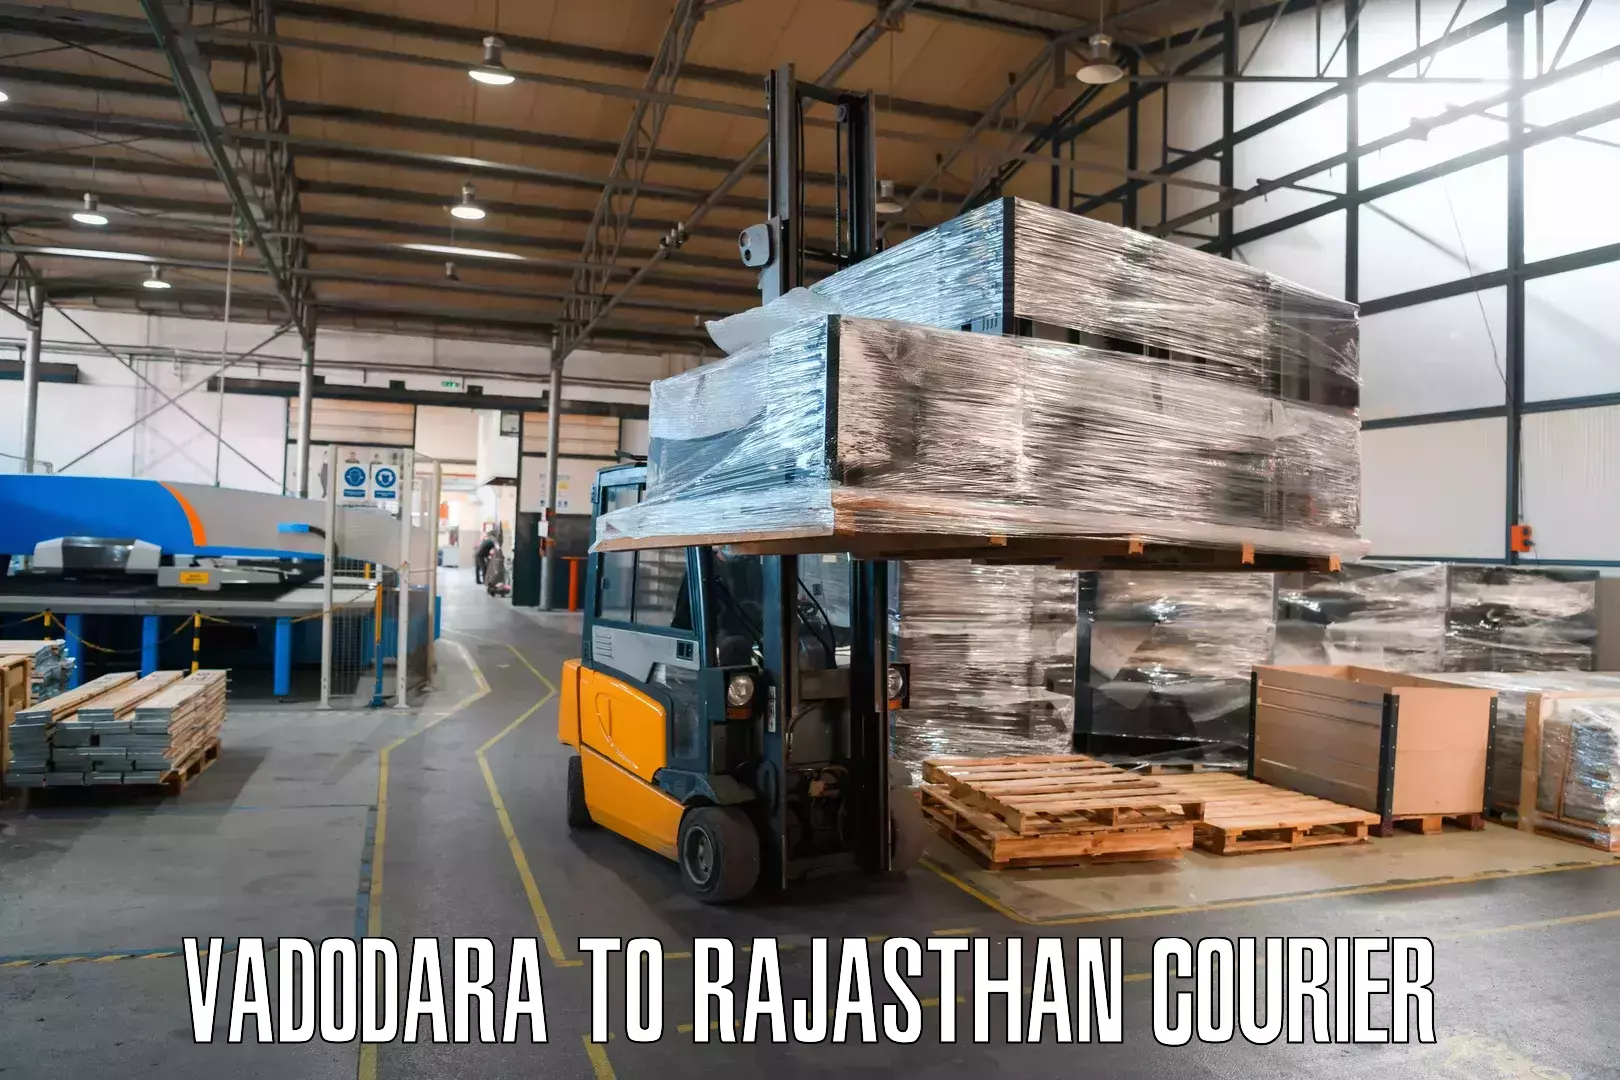 Personal parcel delivery in Vadodara to Pilani